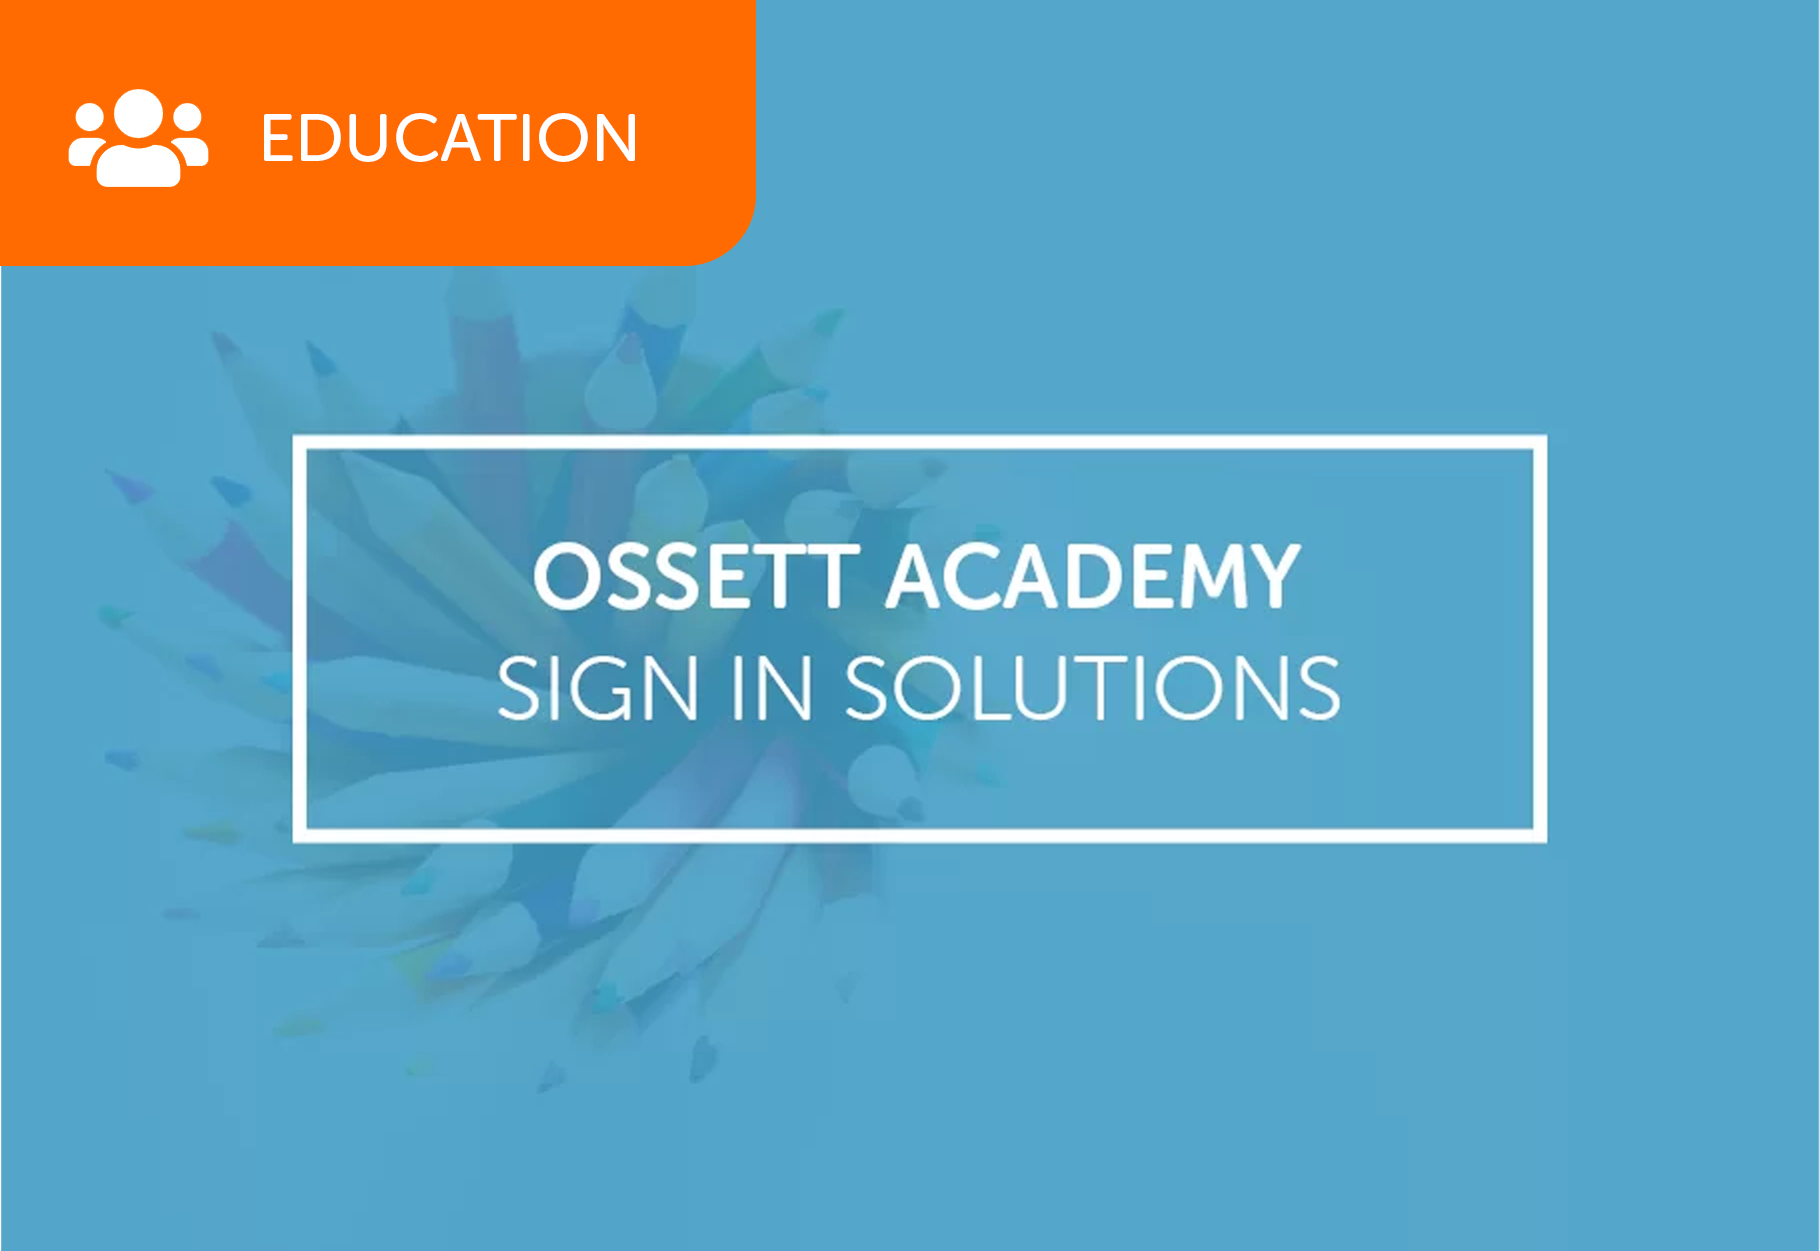 ossett_academy